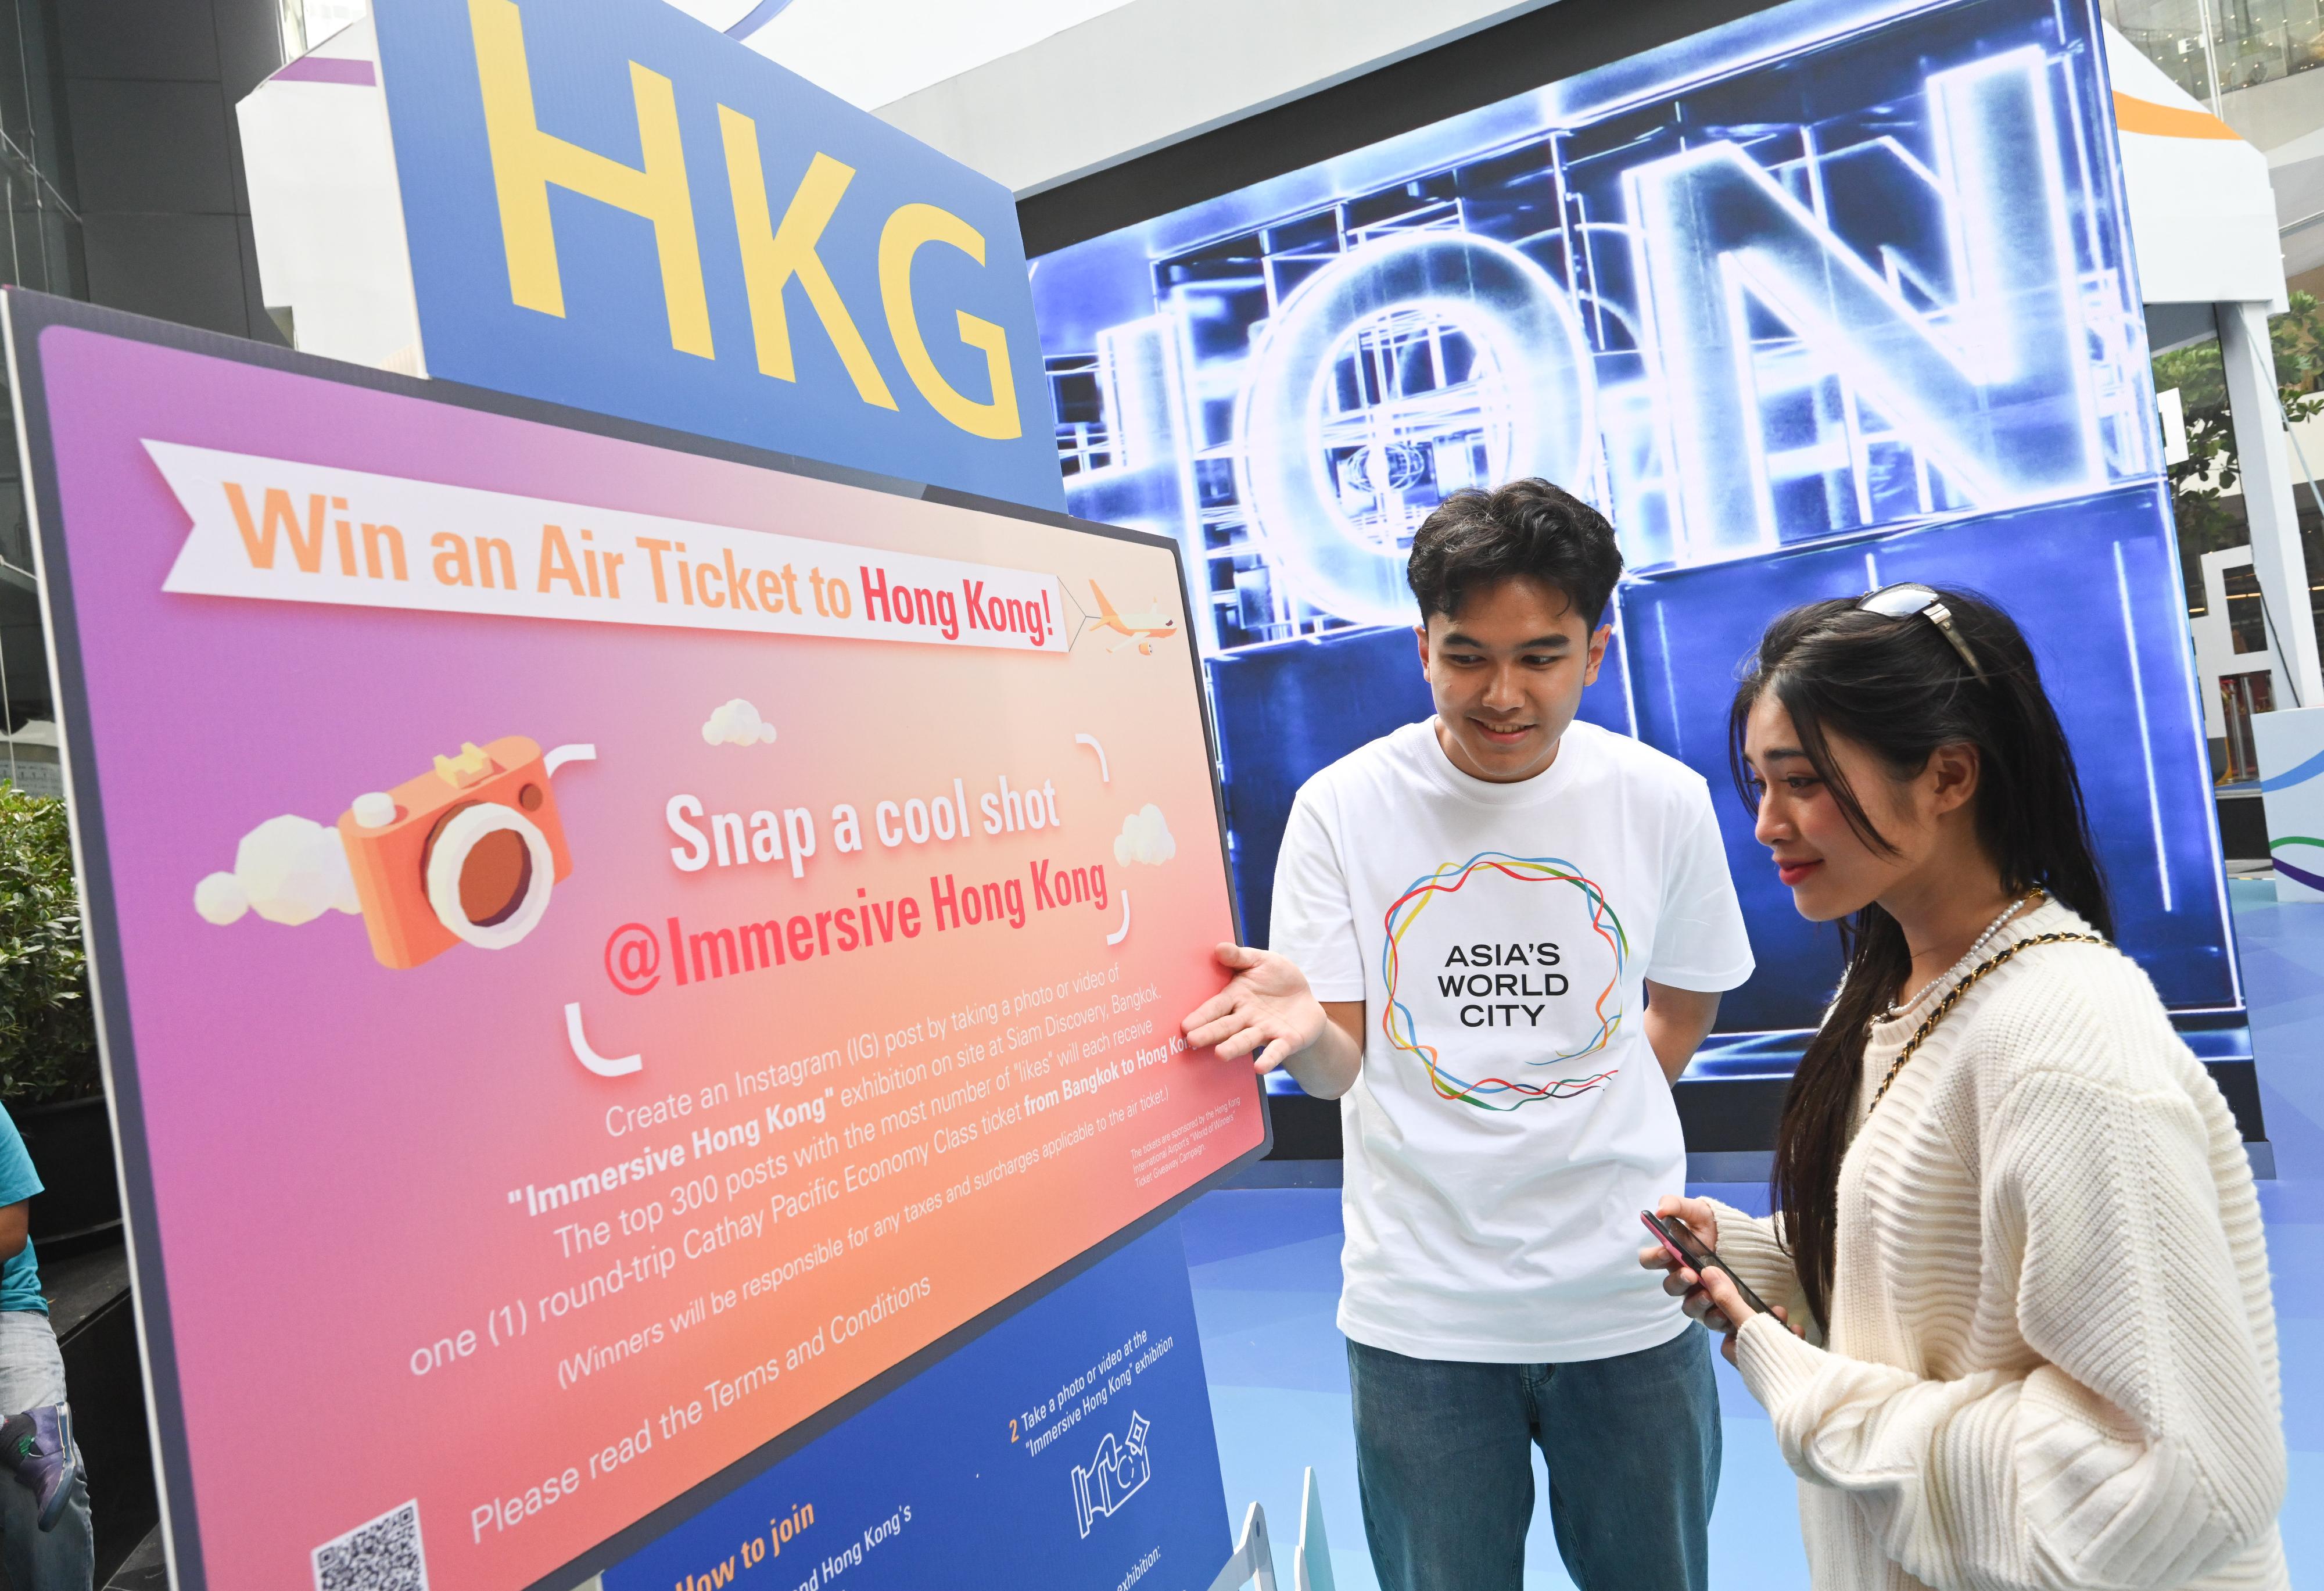 「香港─沉浸式之旅」巡迴展覽今日（十月二十日）在泰國曼谷展開，以藝術科技展示香港獨有的實力、優勢和機遇，是特區政府在東南亞國家聯盟國家舉辦的推廣活動之一。展覽期間同時舉行「快拍留影」互動遊戲，獎品為曼谷至香港的來回機票，由香港國際機場「飛遇世界鉅賞」活動贊助。圖為參觀者查閱遊戲詳情。